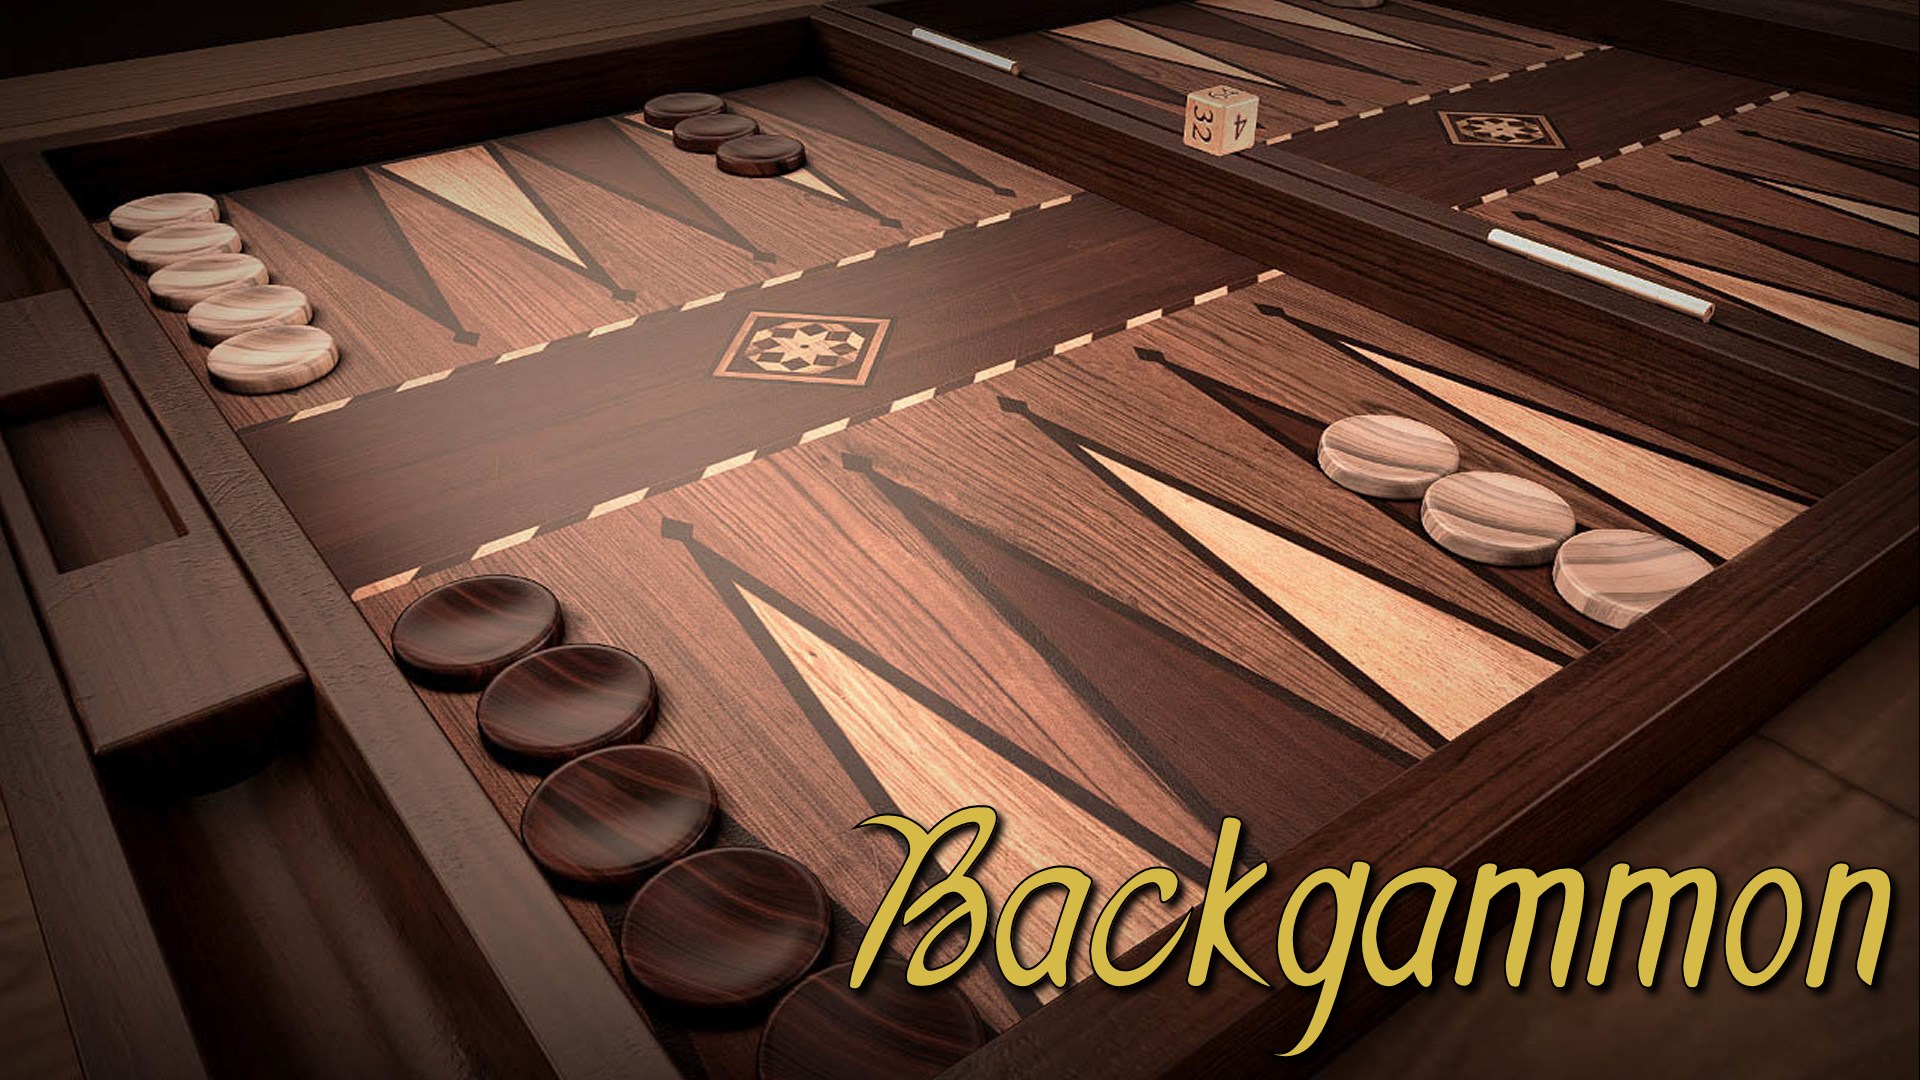 Besmettelijk Discreet Handschrift Backgammon V kopen - Microsoft Store nl-NL